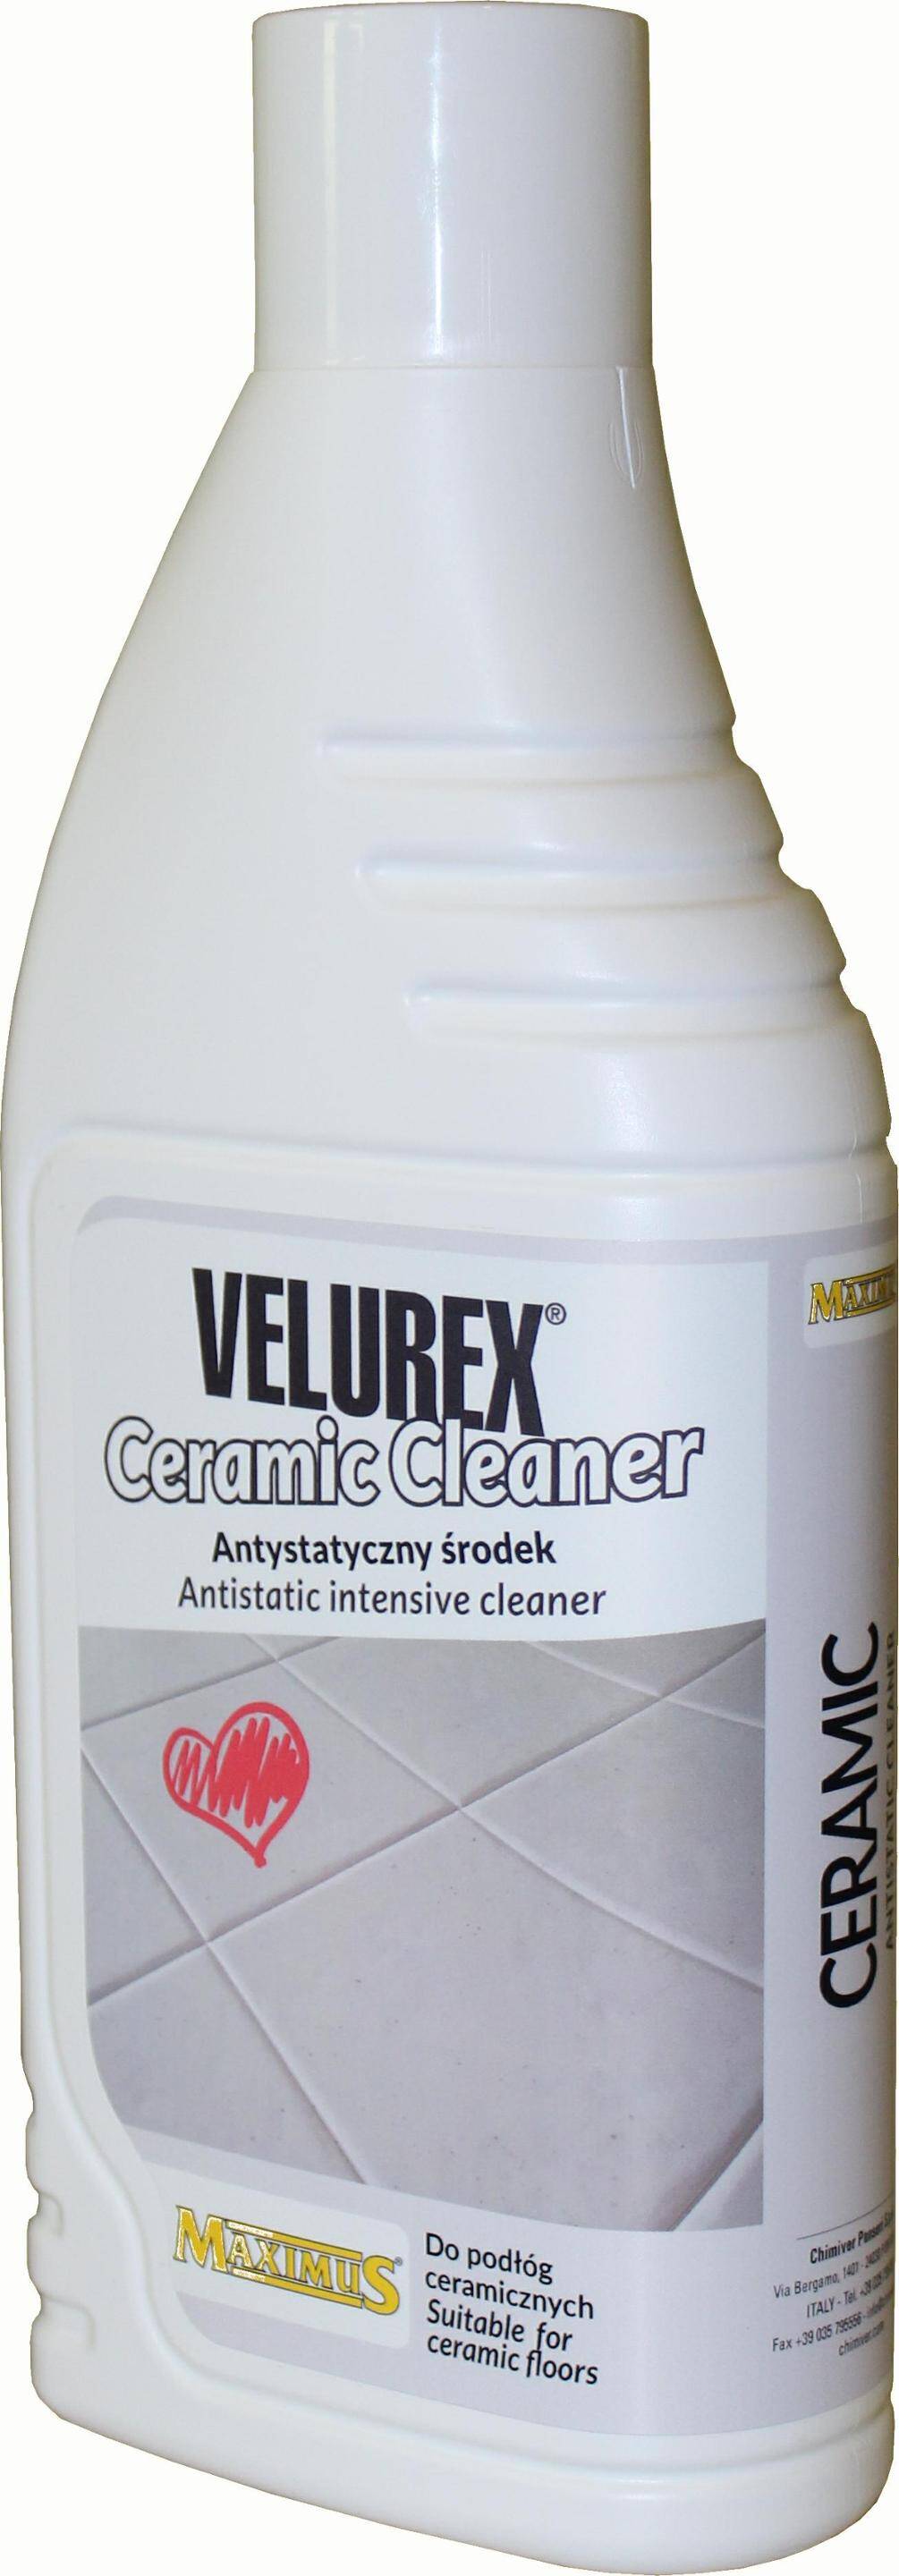 Maximus Velurex Ceramic Cleaner (1L)